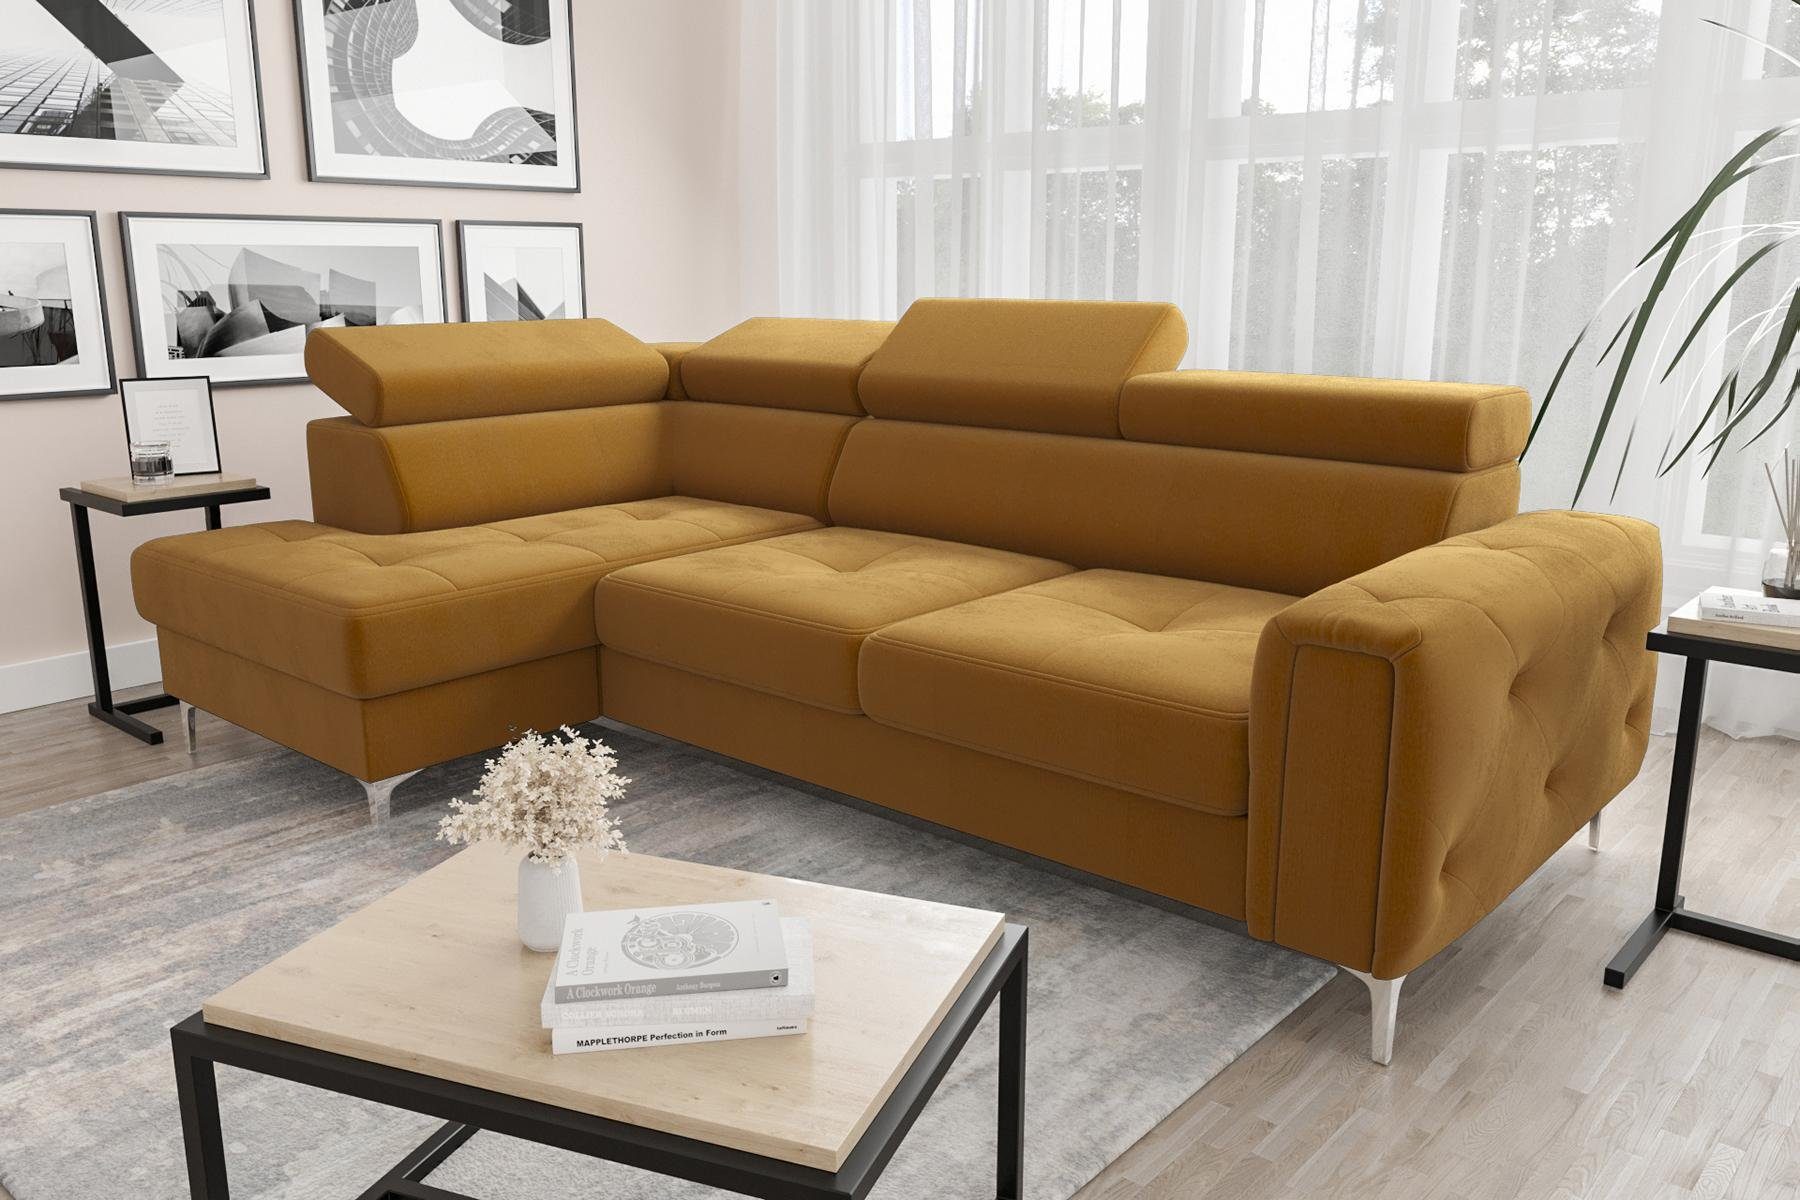 JVmoebel Ecksofa Ledersofa L-Form Couch Wohnzimmer Ecke Design, Made in Europe Gelb